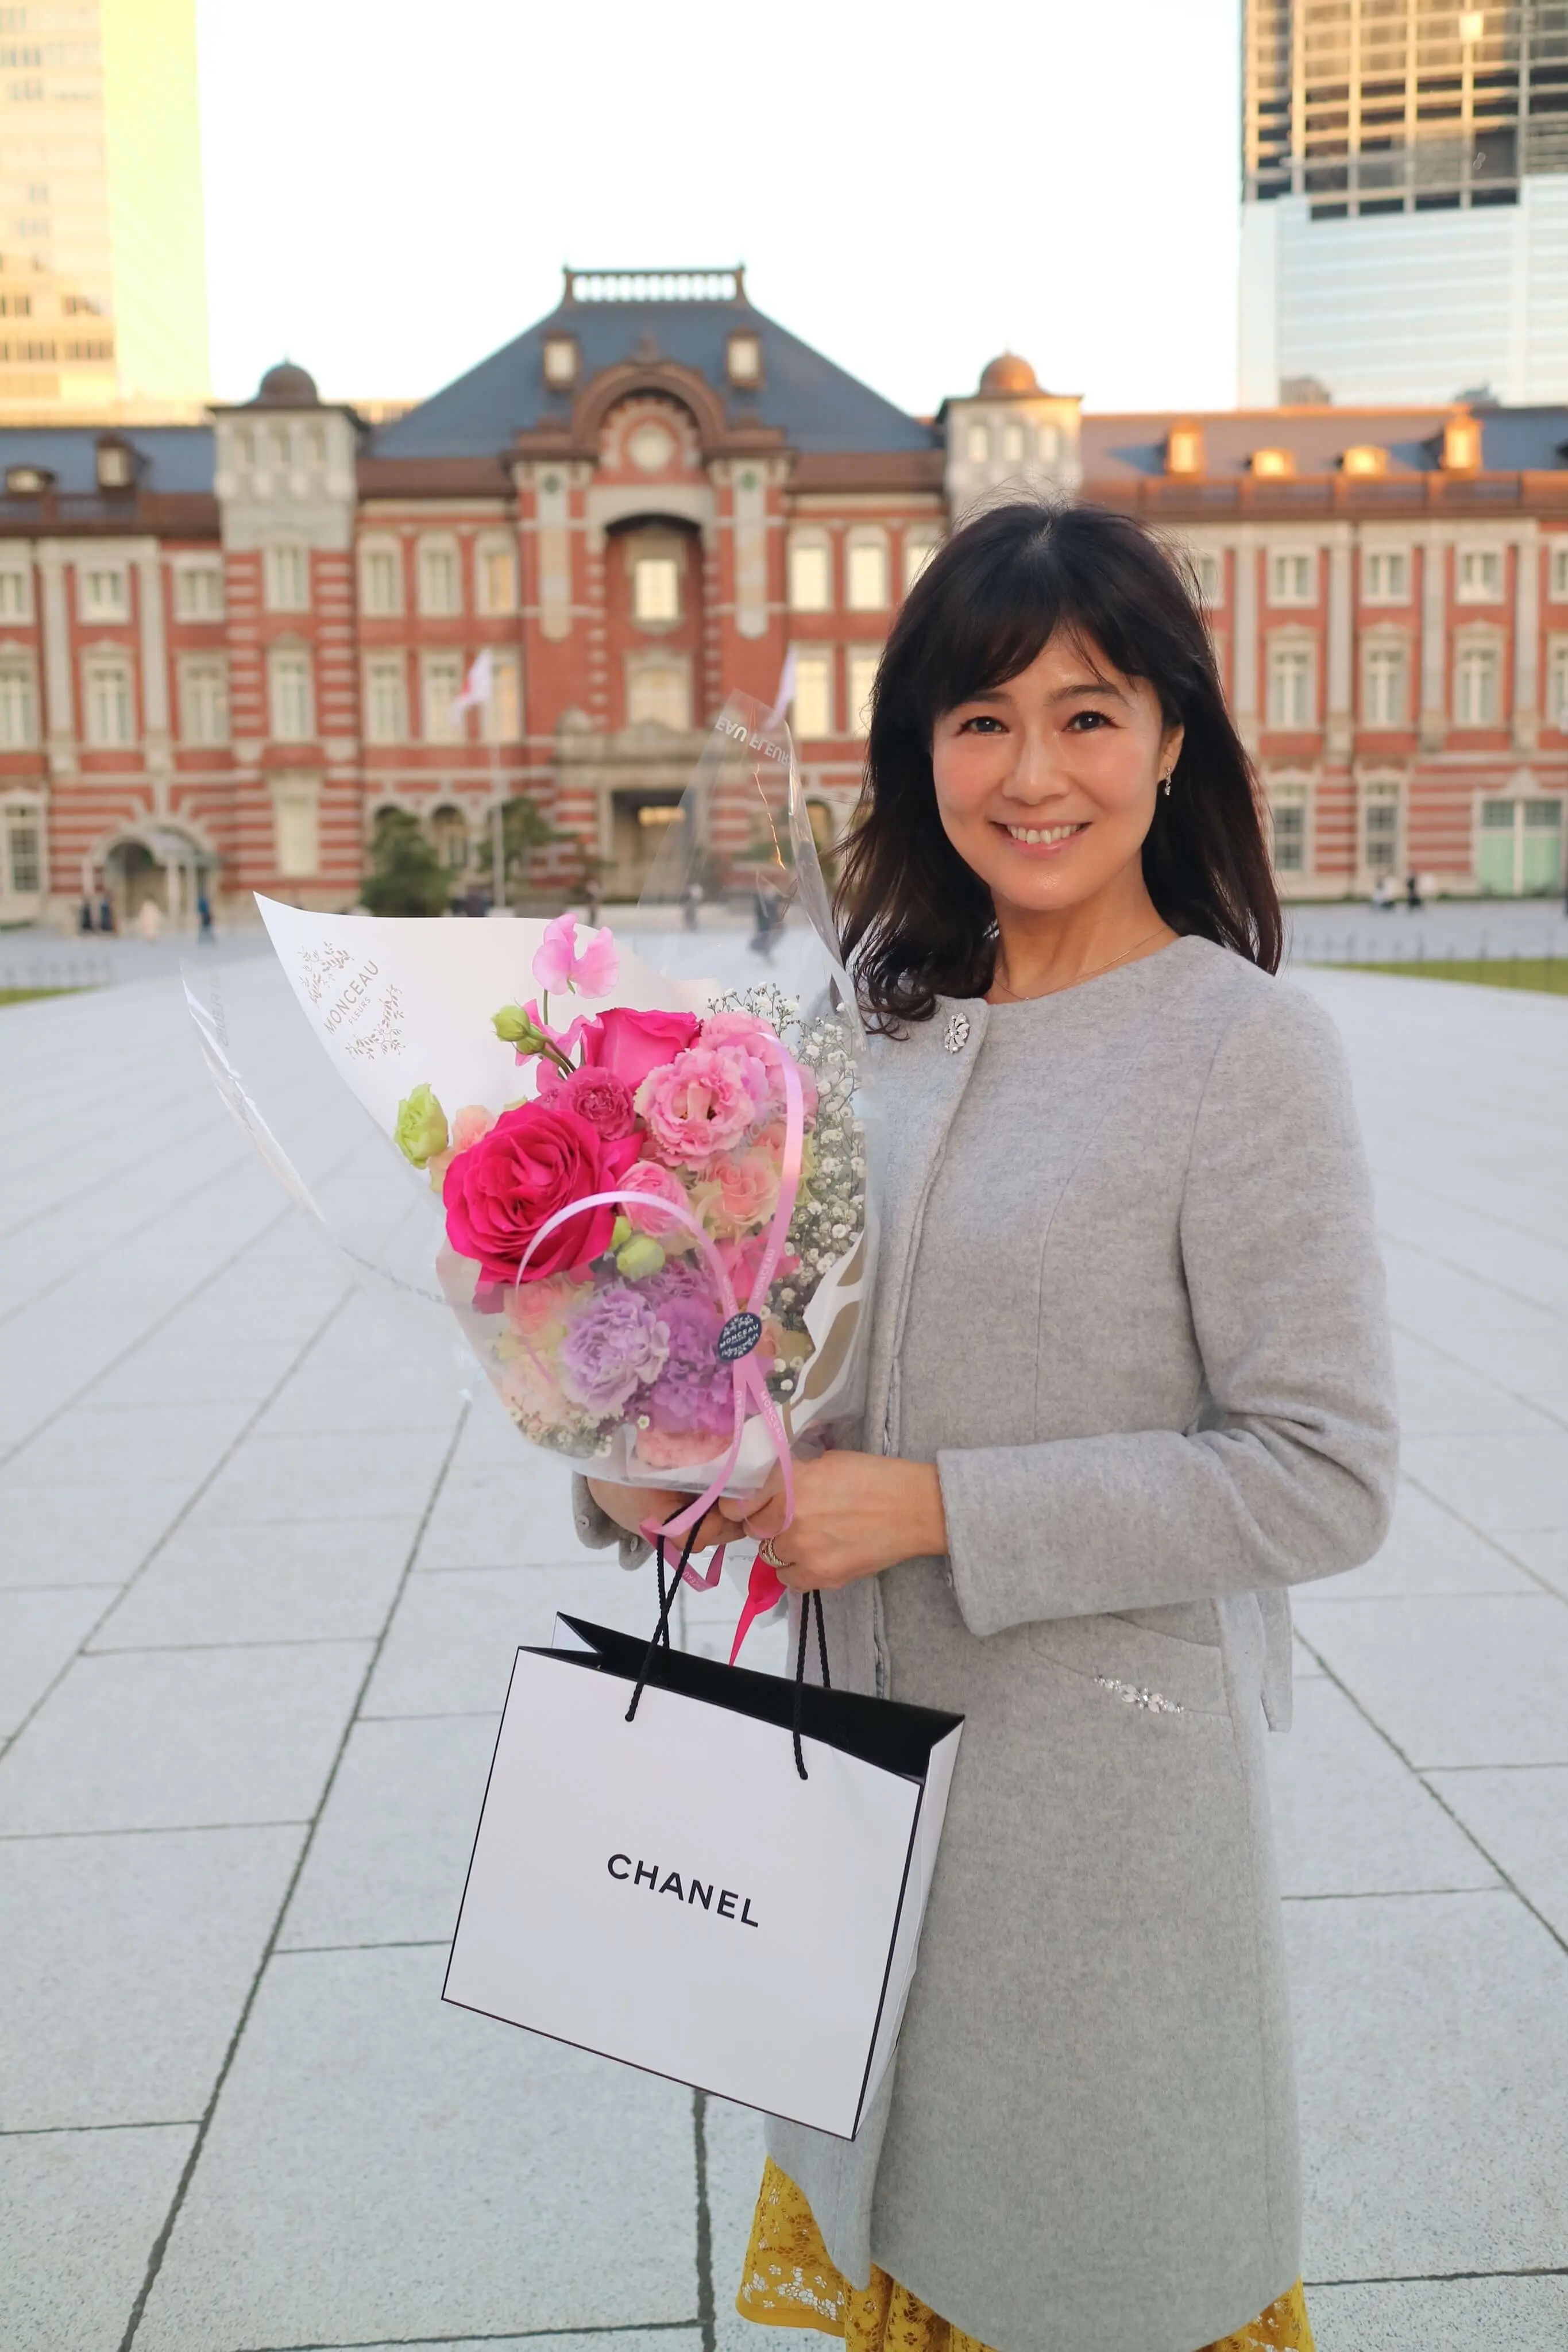 グレーのコートでお誕生日の花束とプレゼントを持って東京駅の前で記念撮影